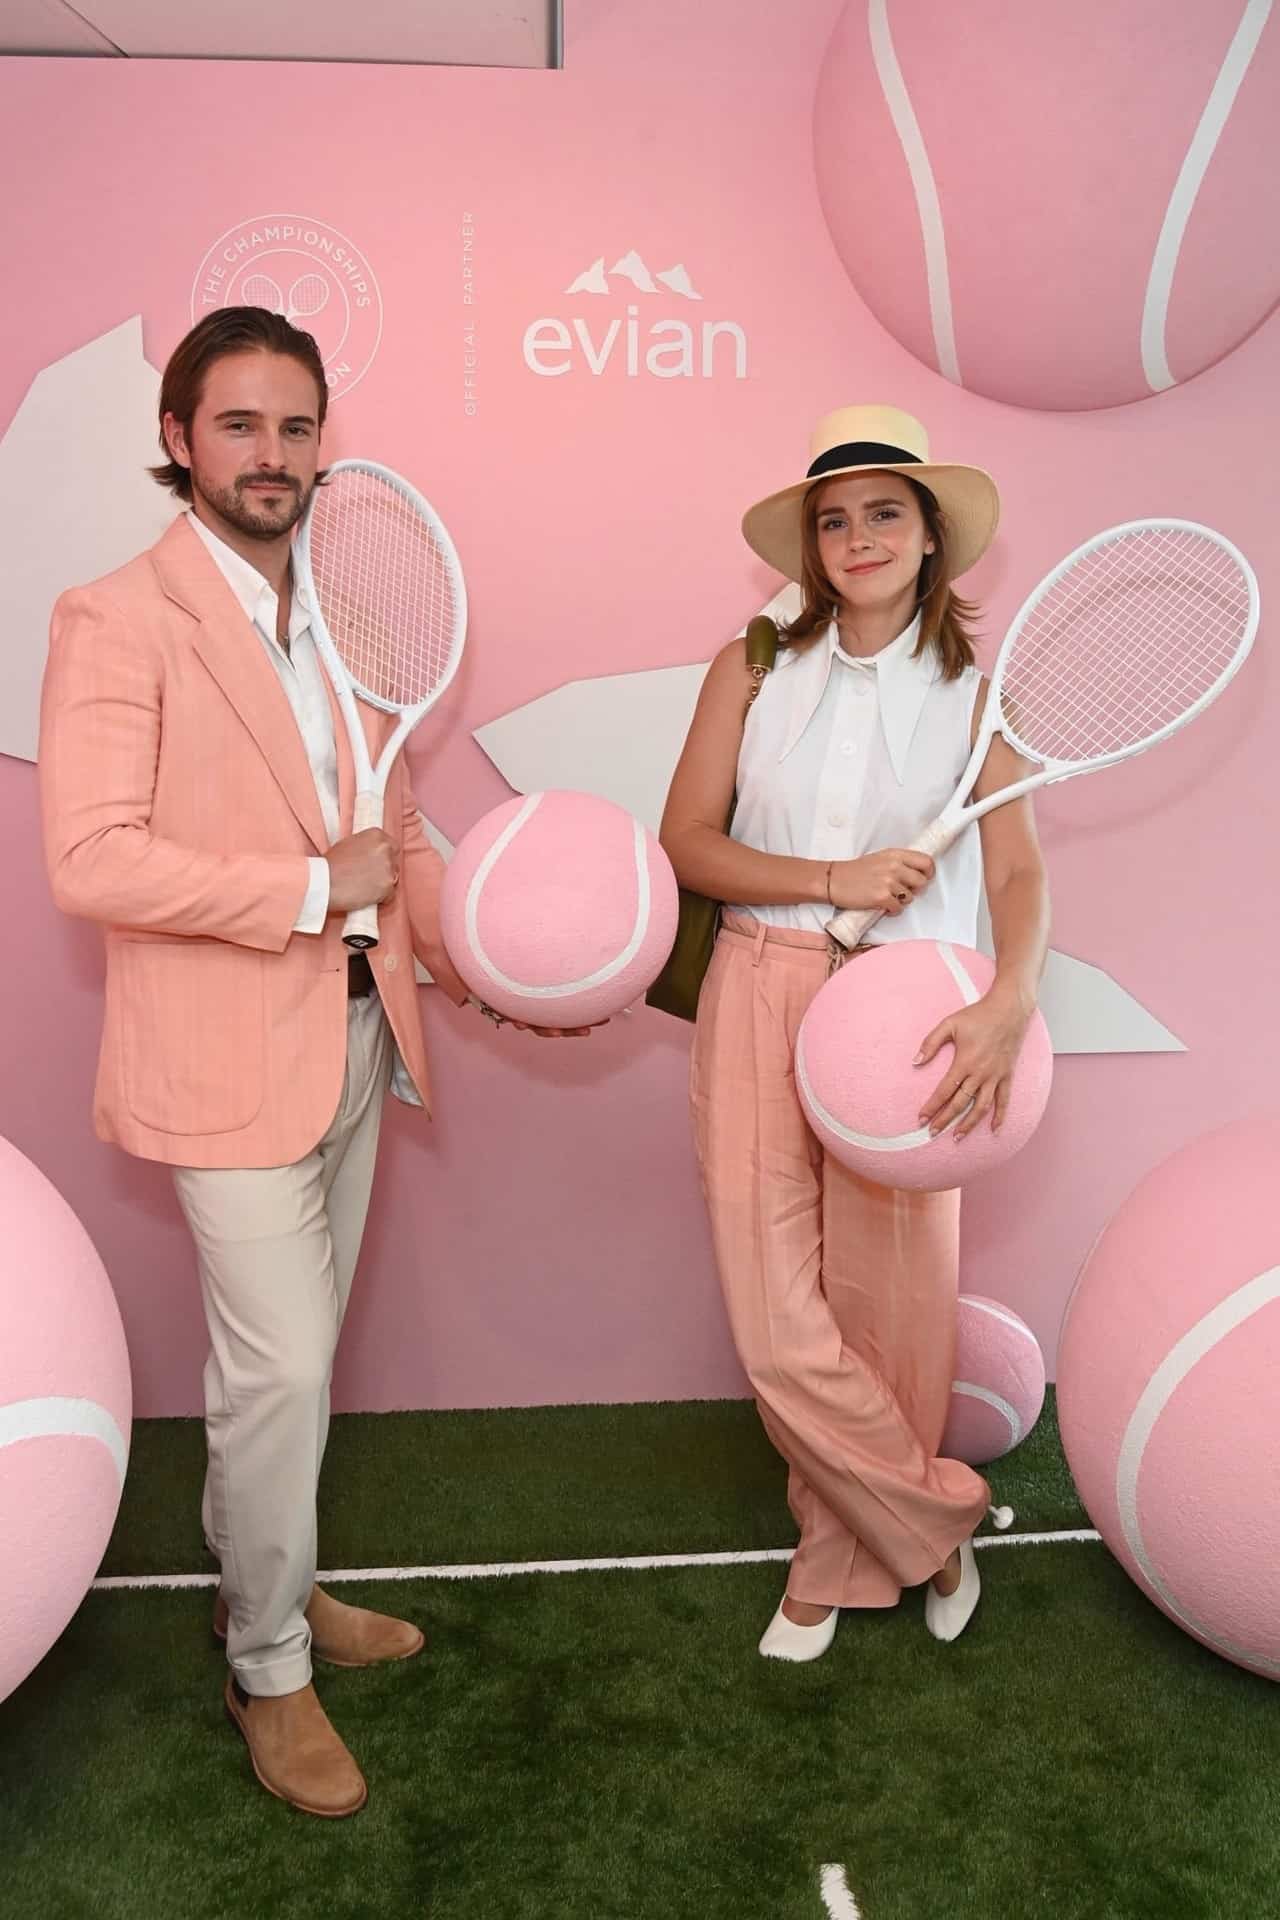 Emma Watson's Stunning Outfit Steals the Show at Wimbledon 2023 Men's Final